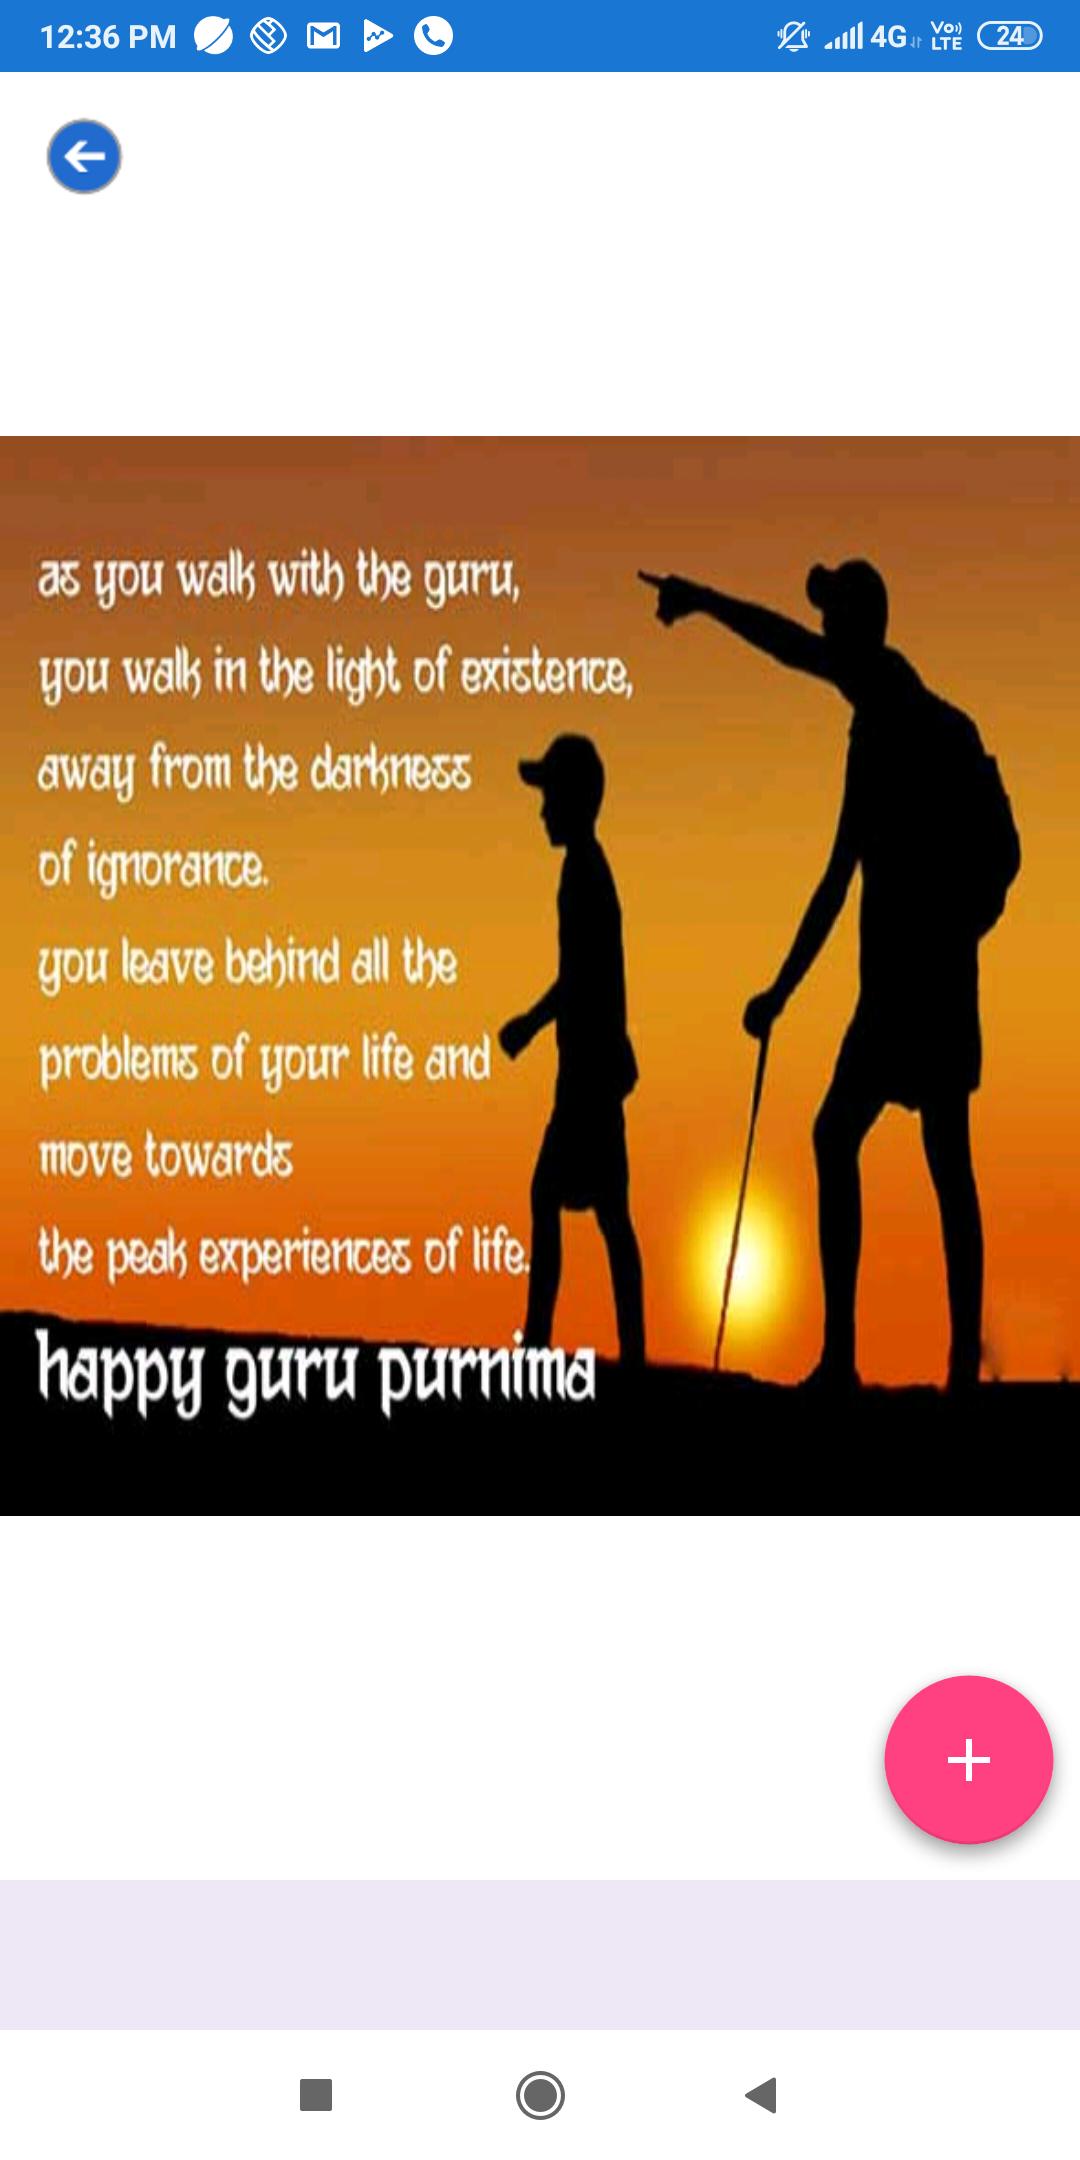 Happy Guru Purnima: greetings,quotes,marathi quote for Android - APK